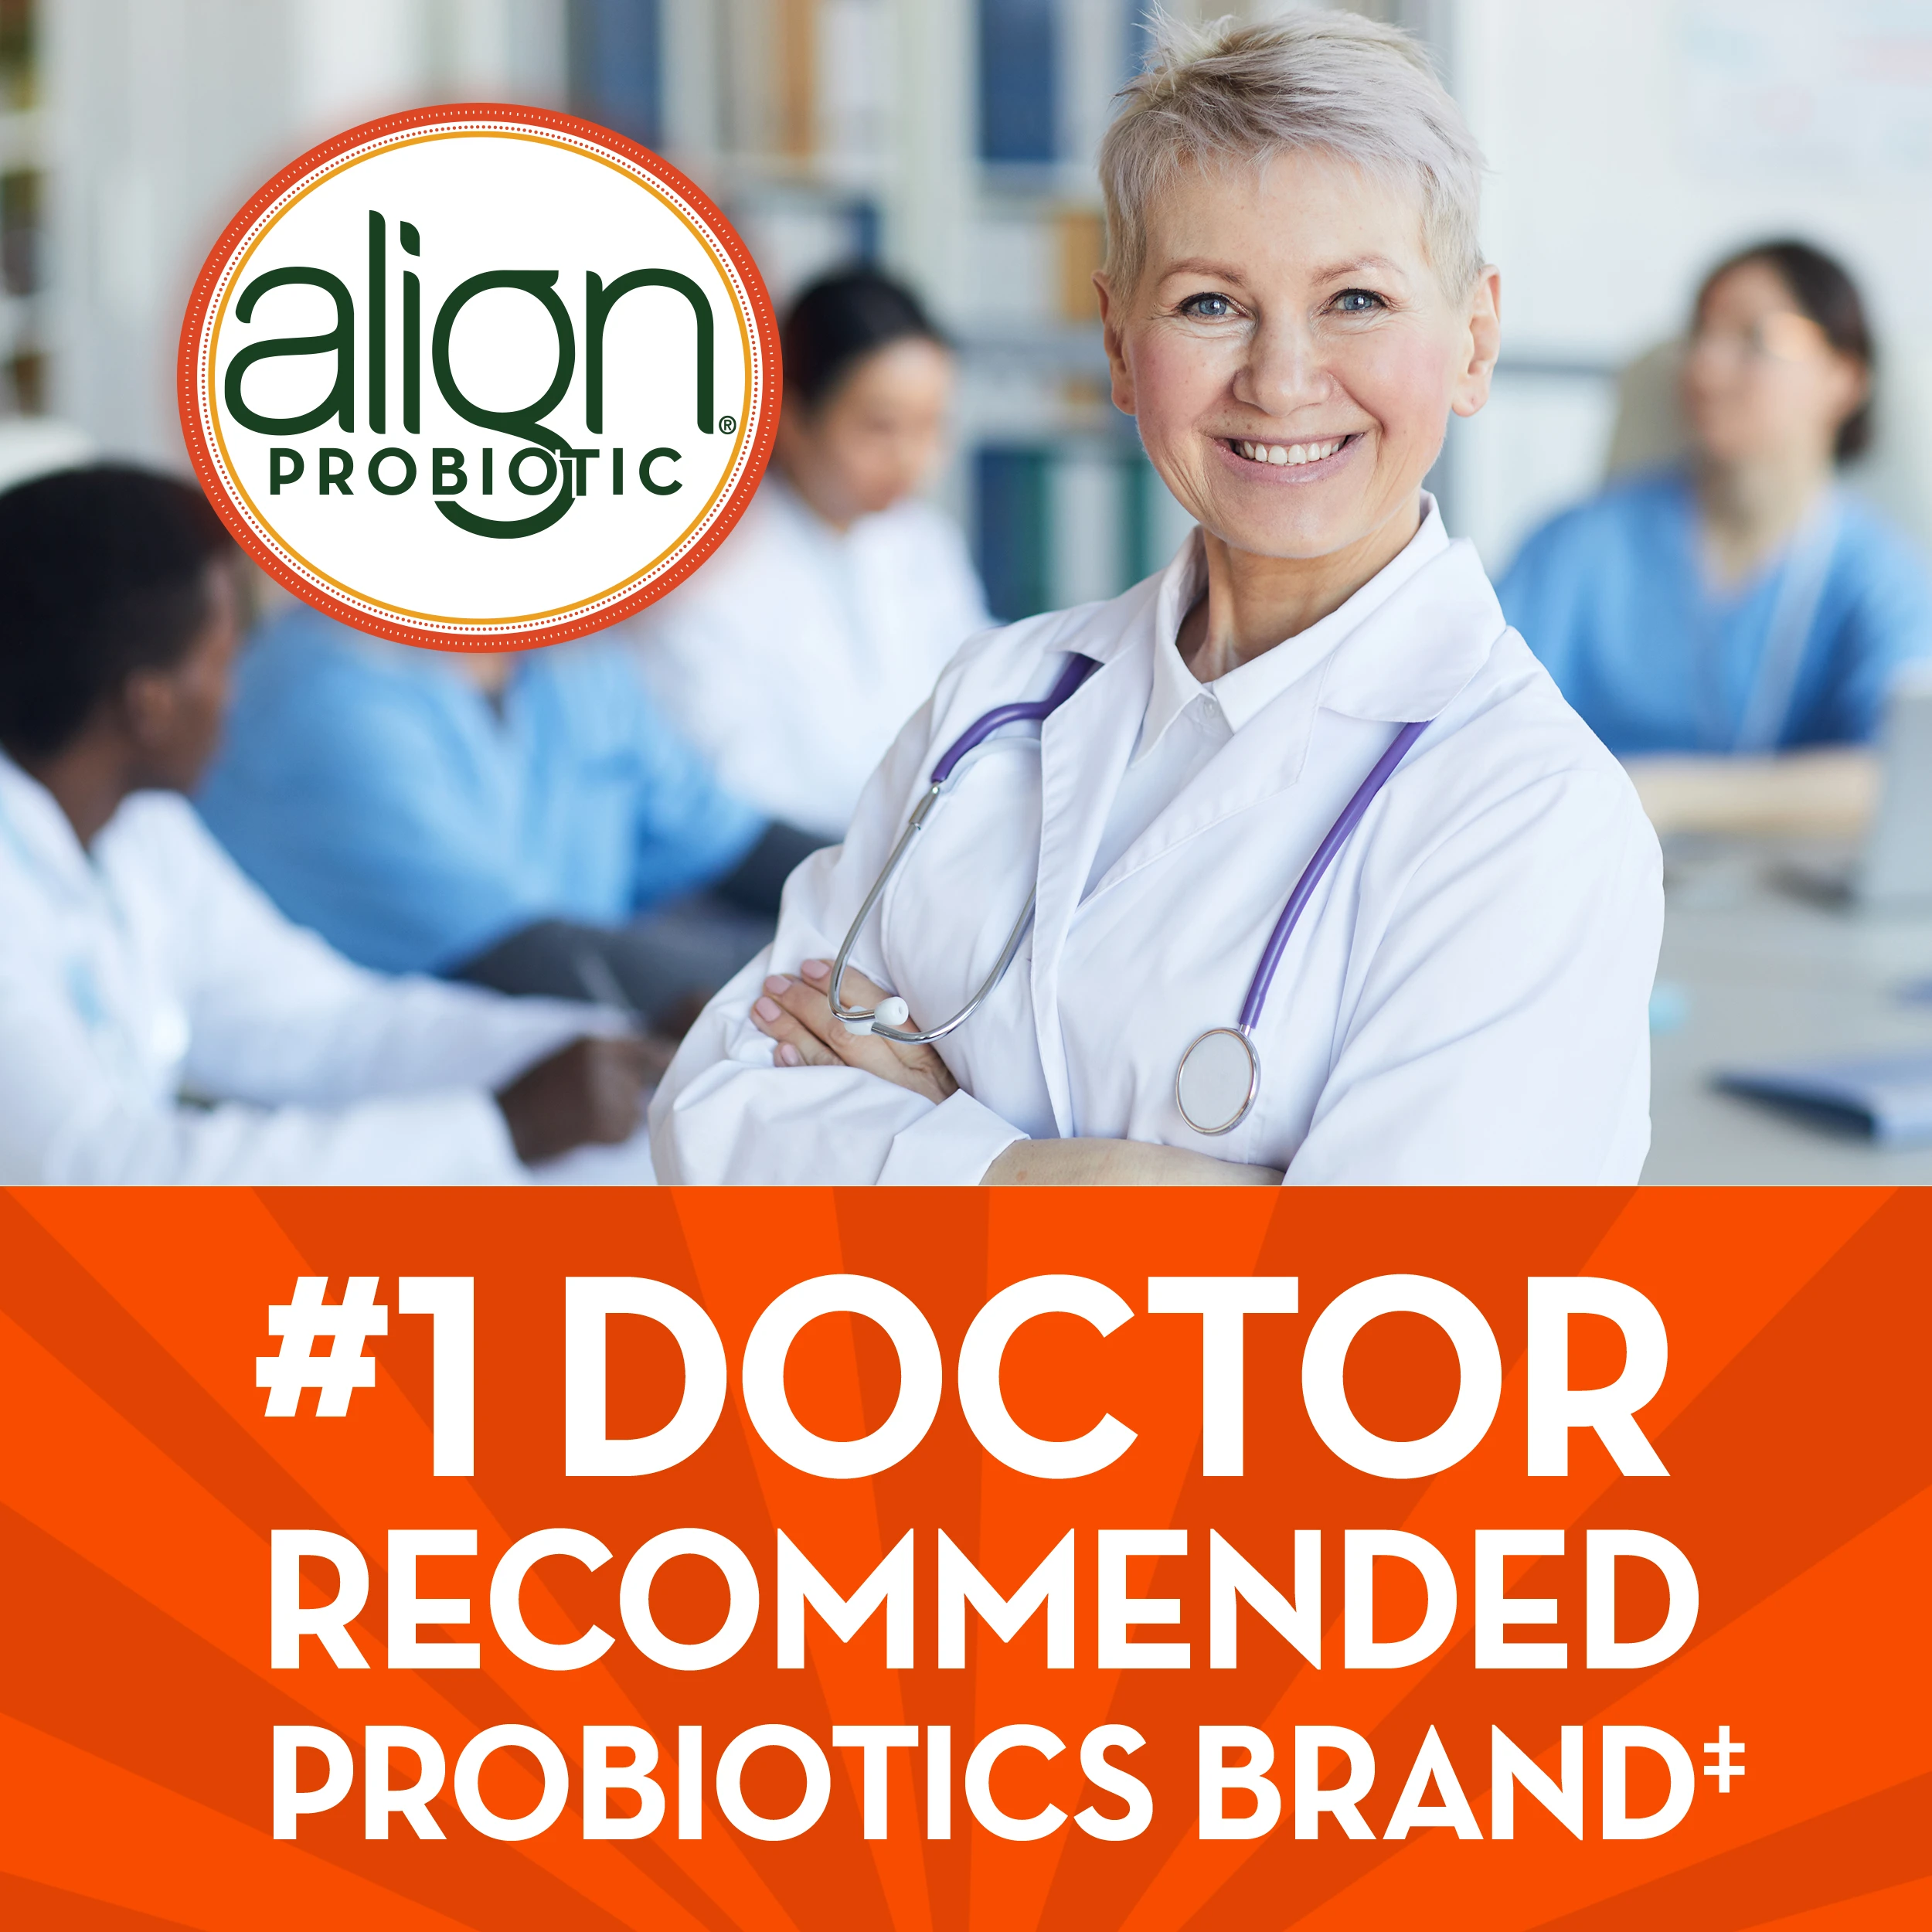 Align DualBiotic Prebiotic + Probiotic Gummies Supplement